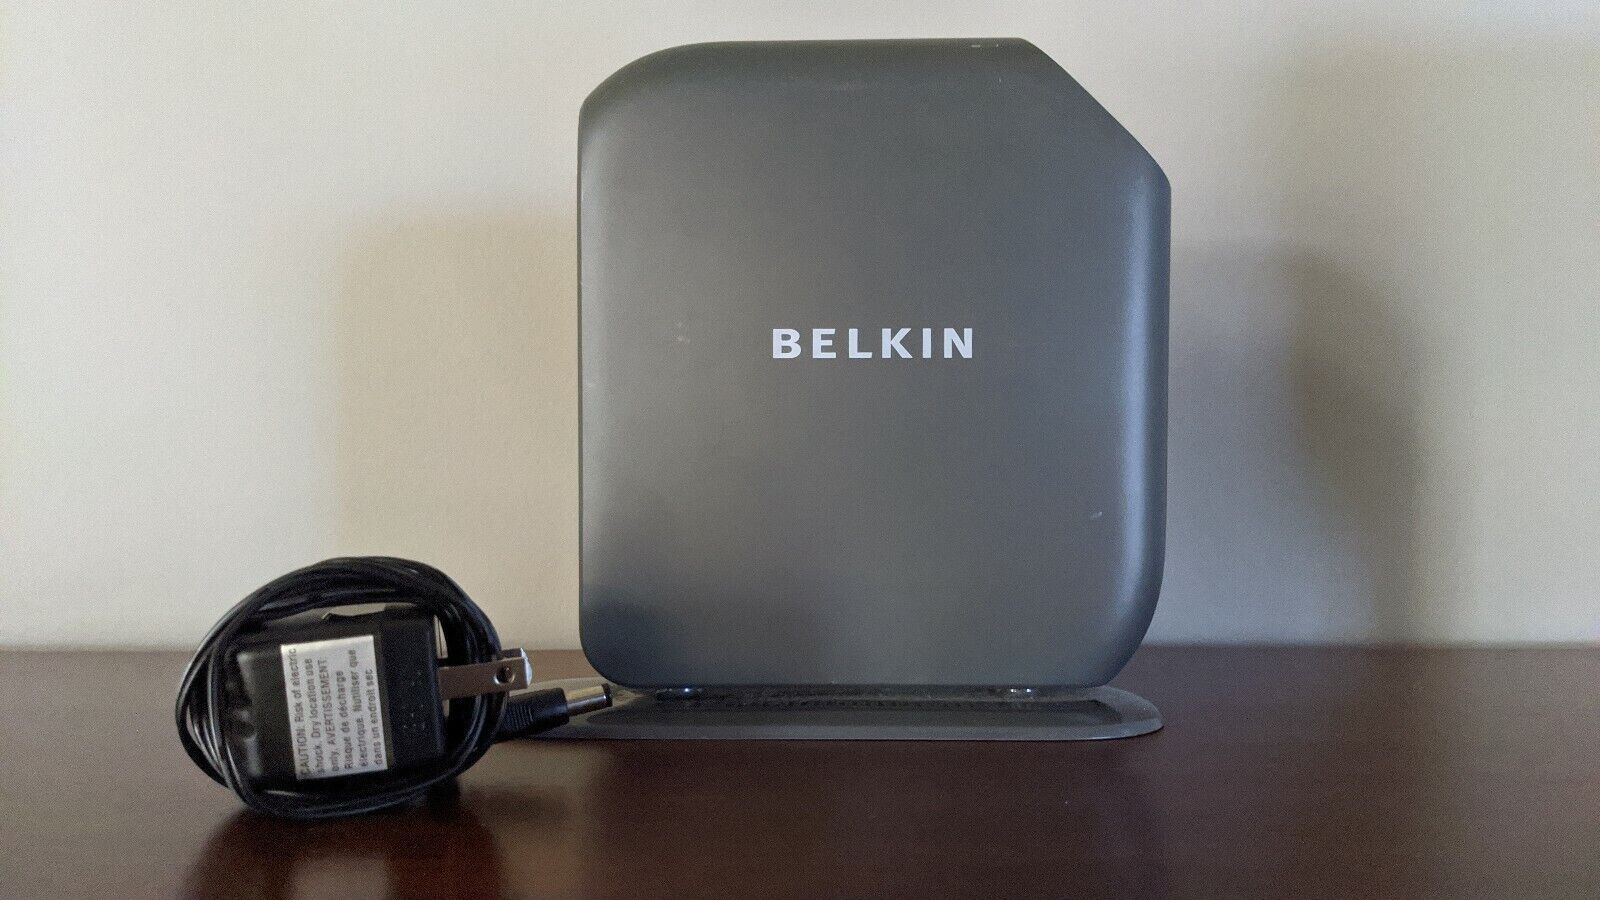 Belkin Share N300 300 Mbps 4-Port 10/100 Wireless N Router (F7D7302)